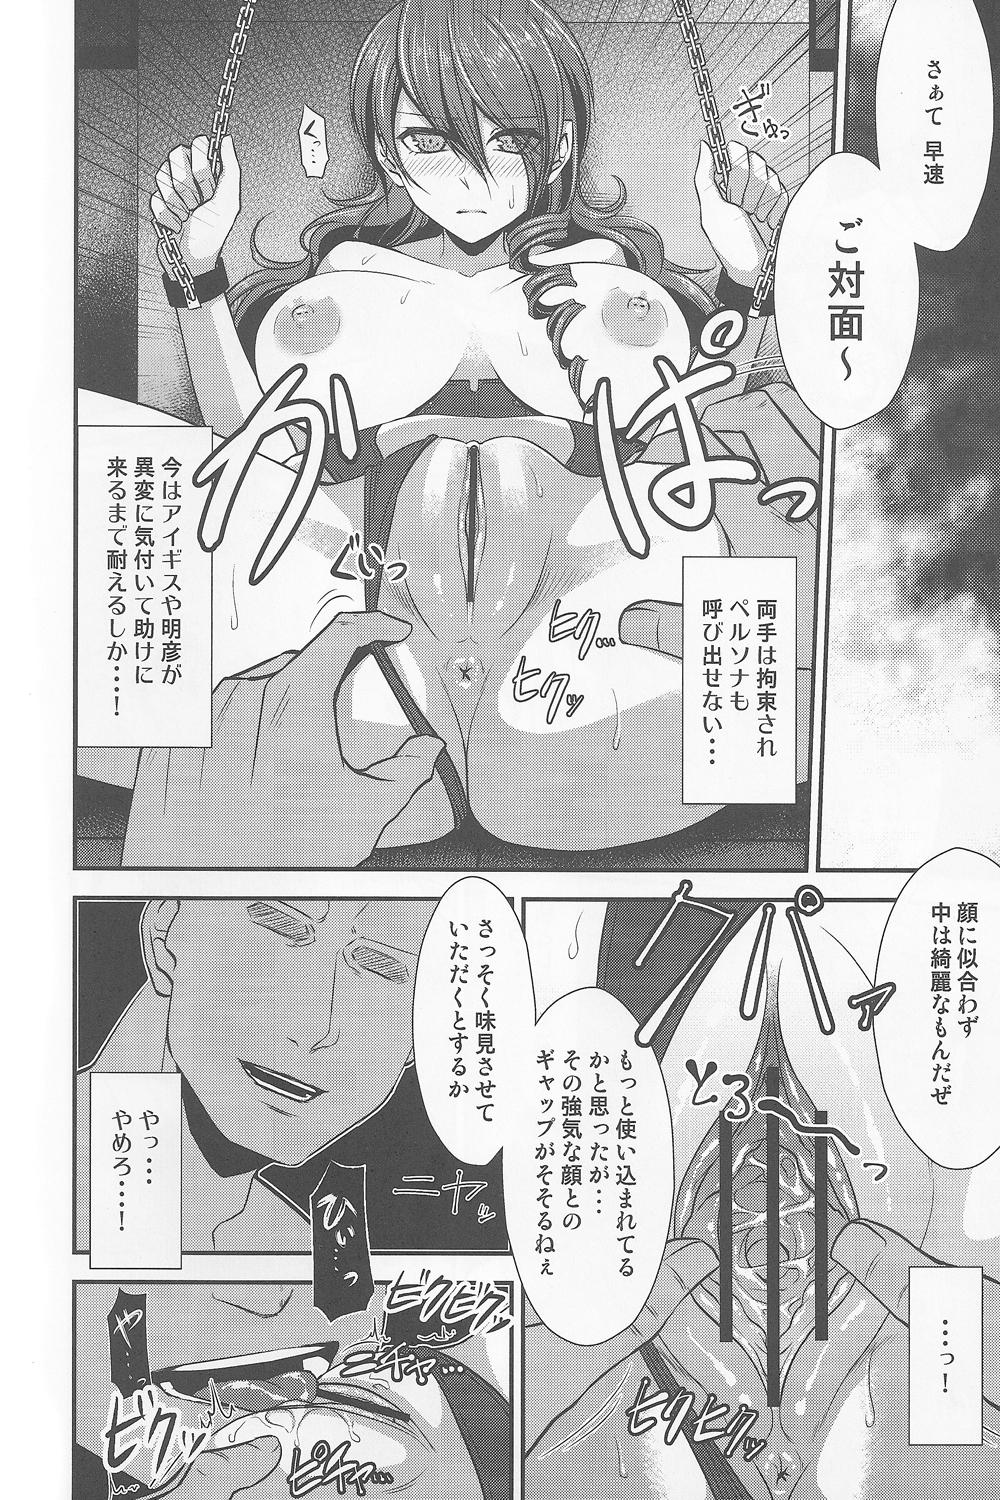 Buceta Shokuzai - Persona 3 Flaquita - Page 7